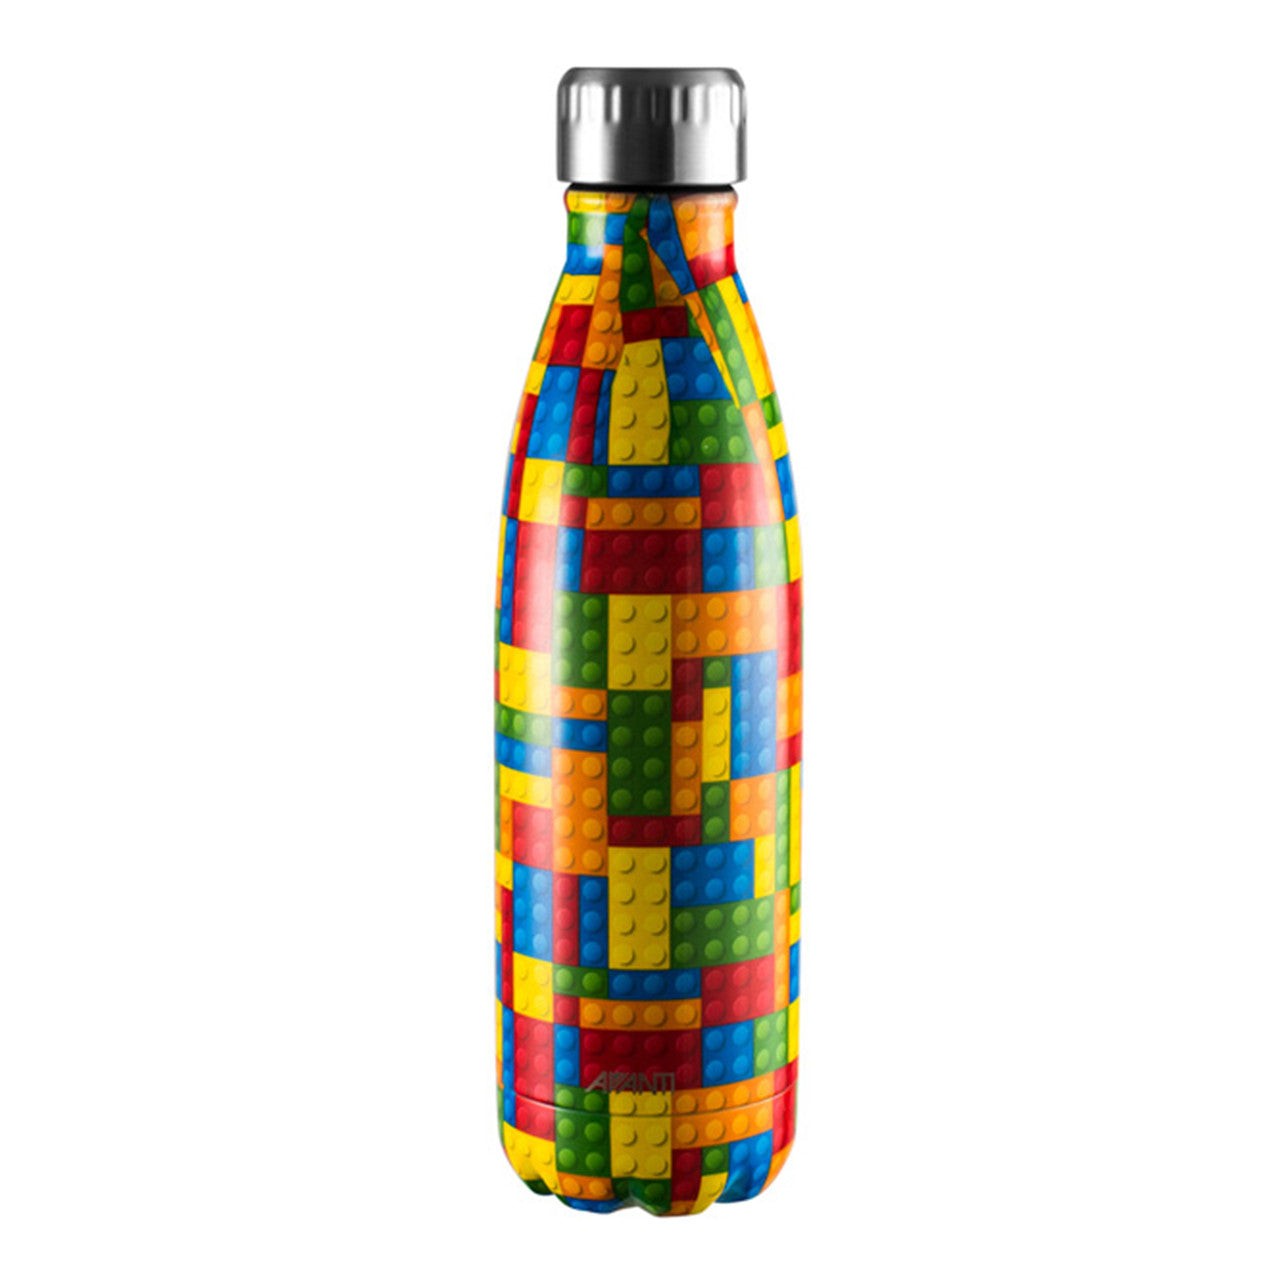 Avanti Drink Bottle 500ml - 3 for $20 Pack